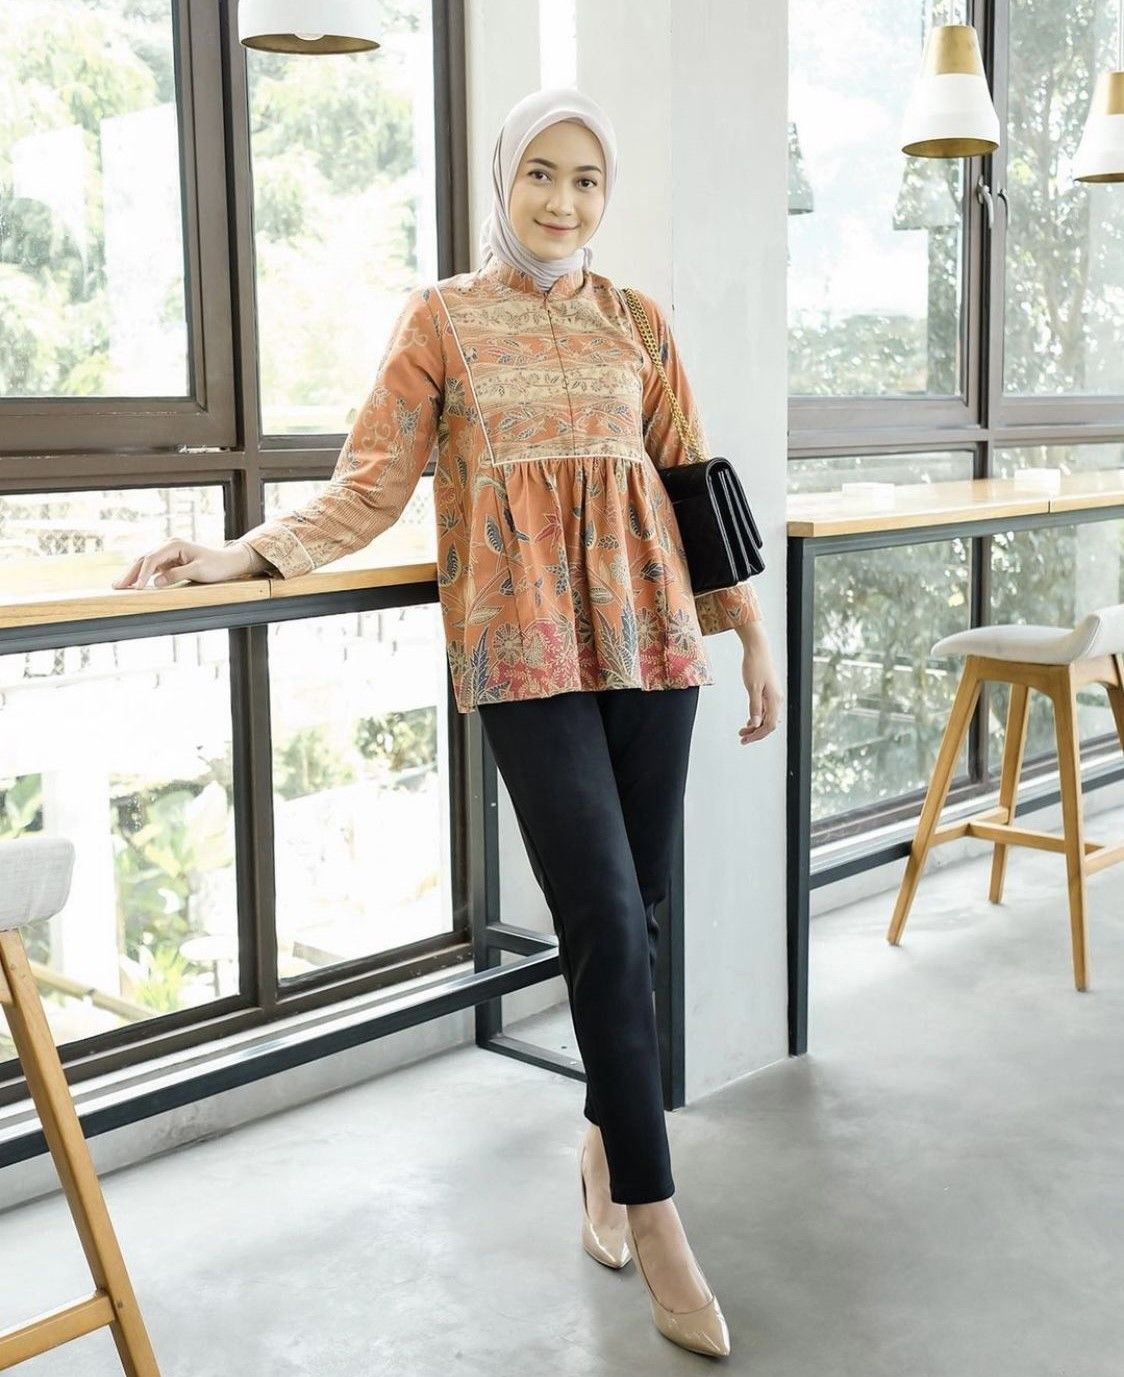  model baju batik atasan wanita kantor